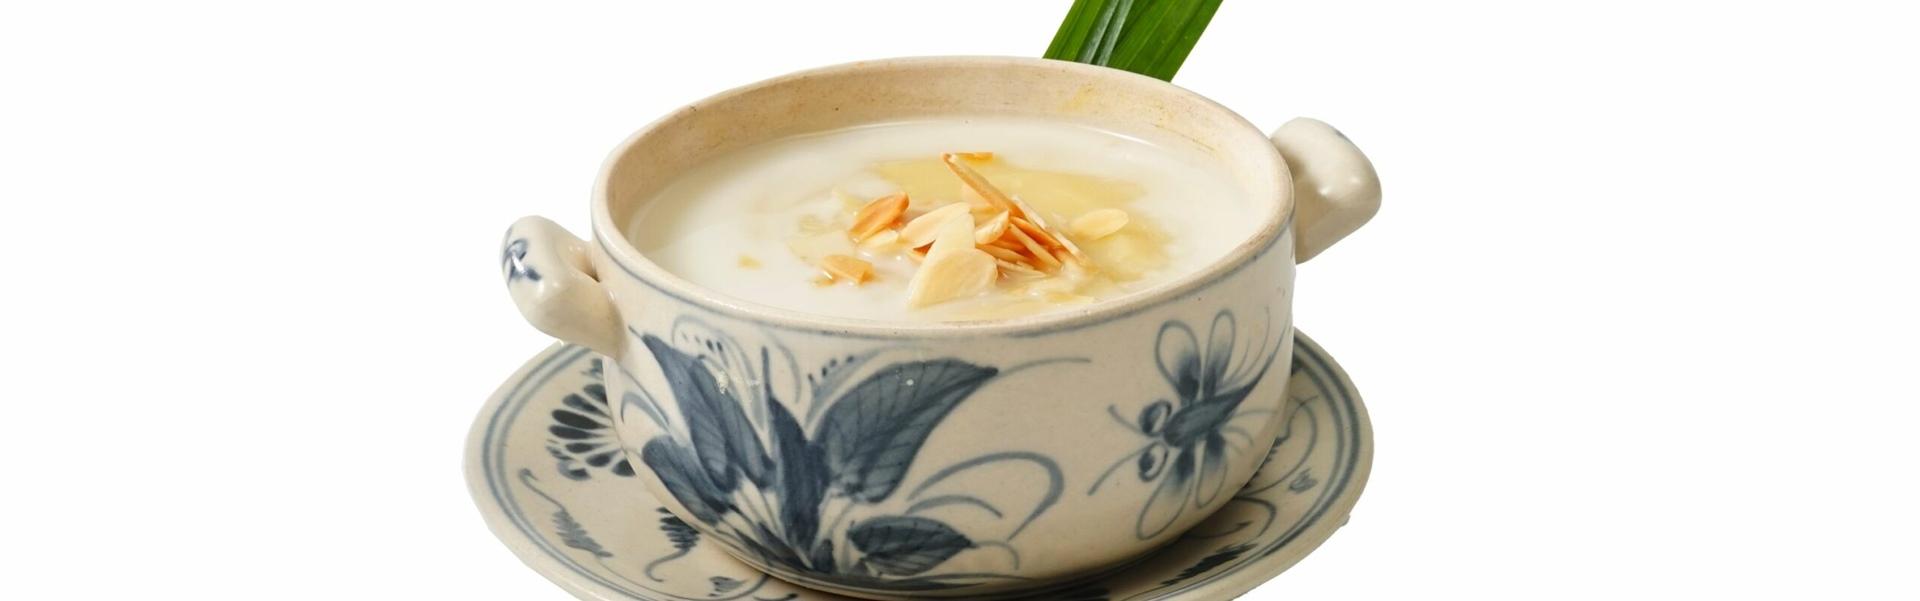 Soupe sucrée vietnamienne aux bananes et au lait de coco